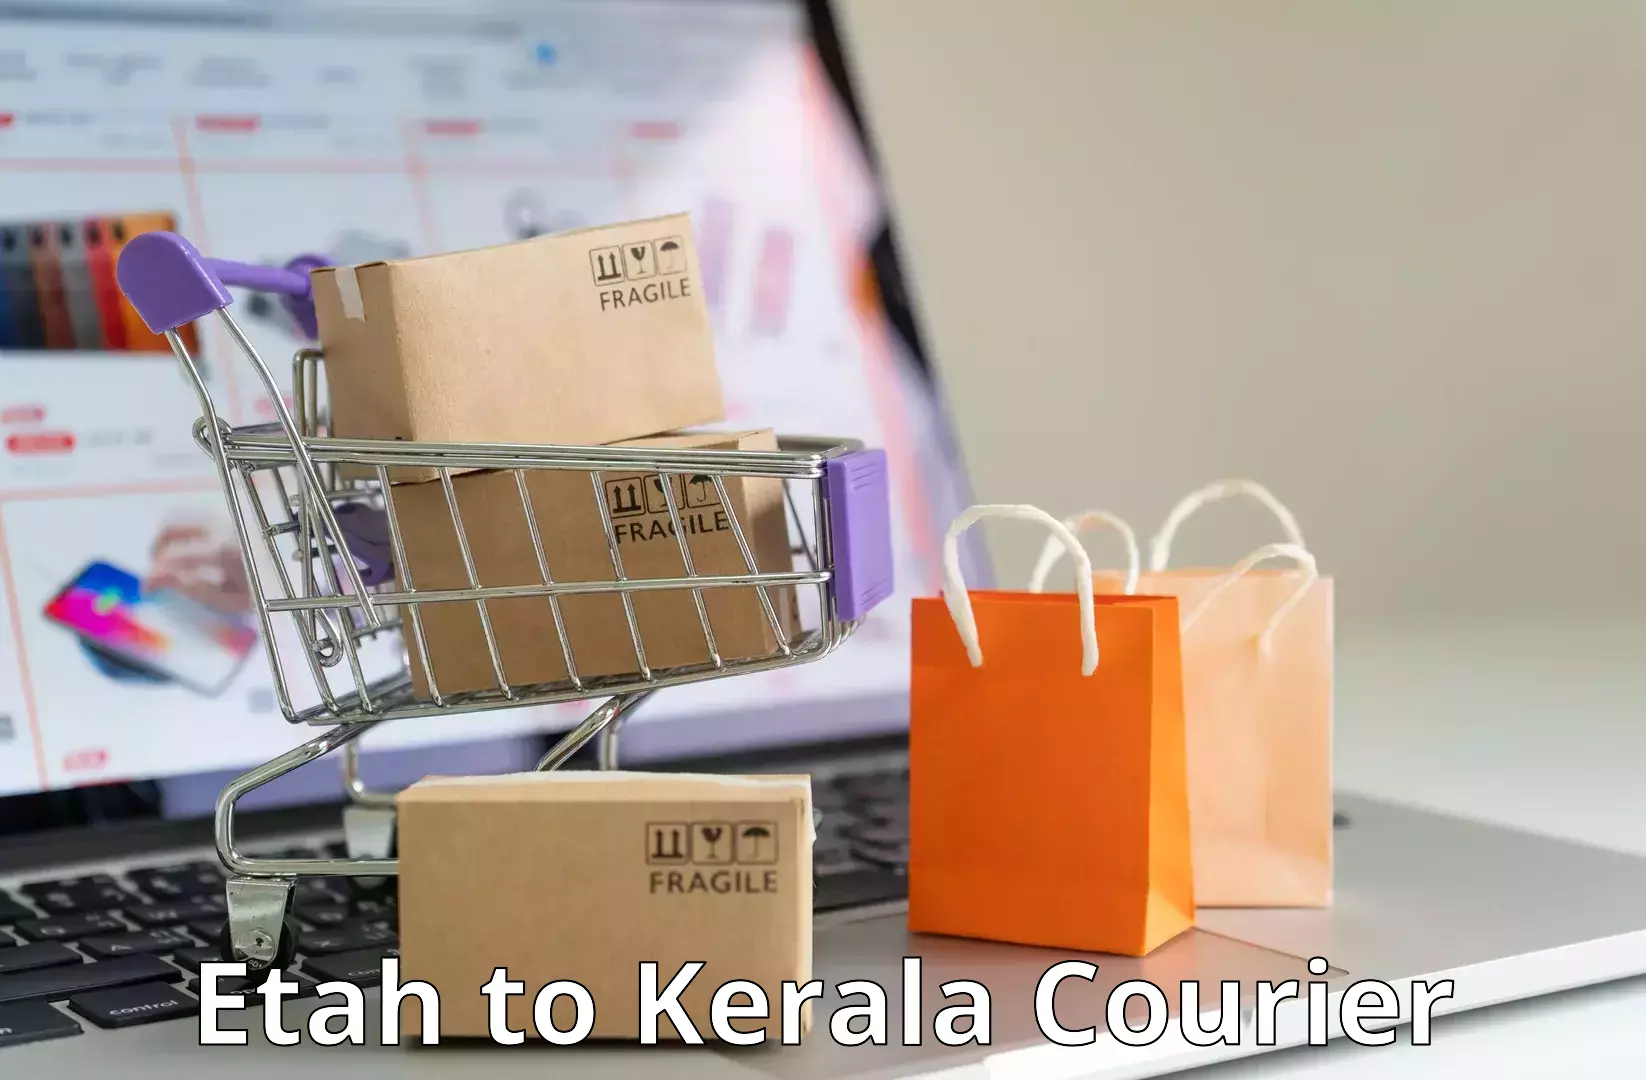 Affordable parcel rates Etah to Kerala